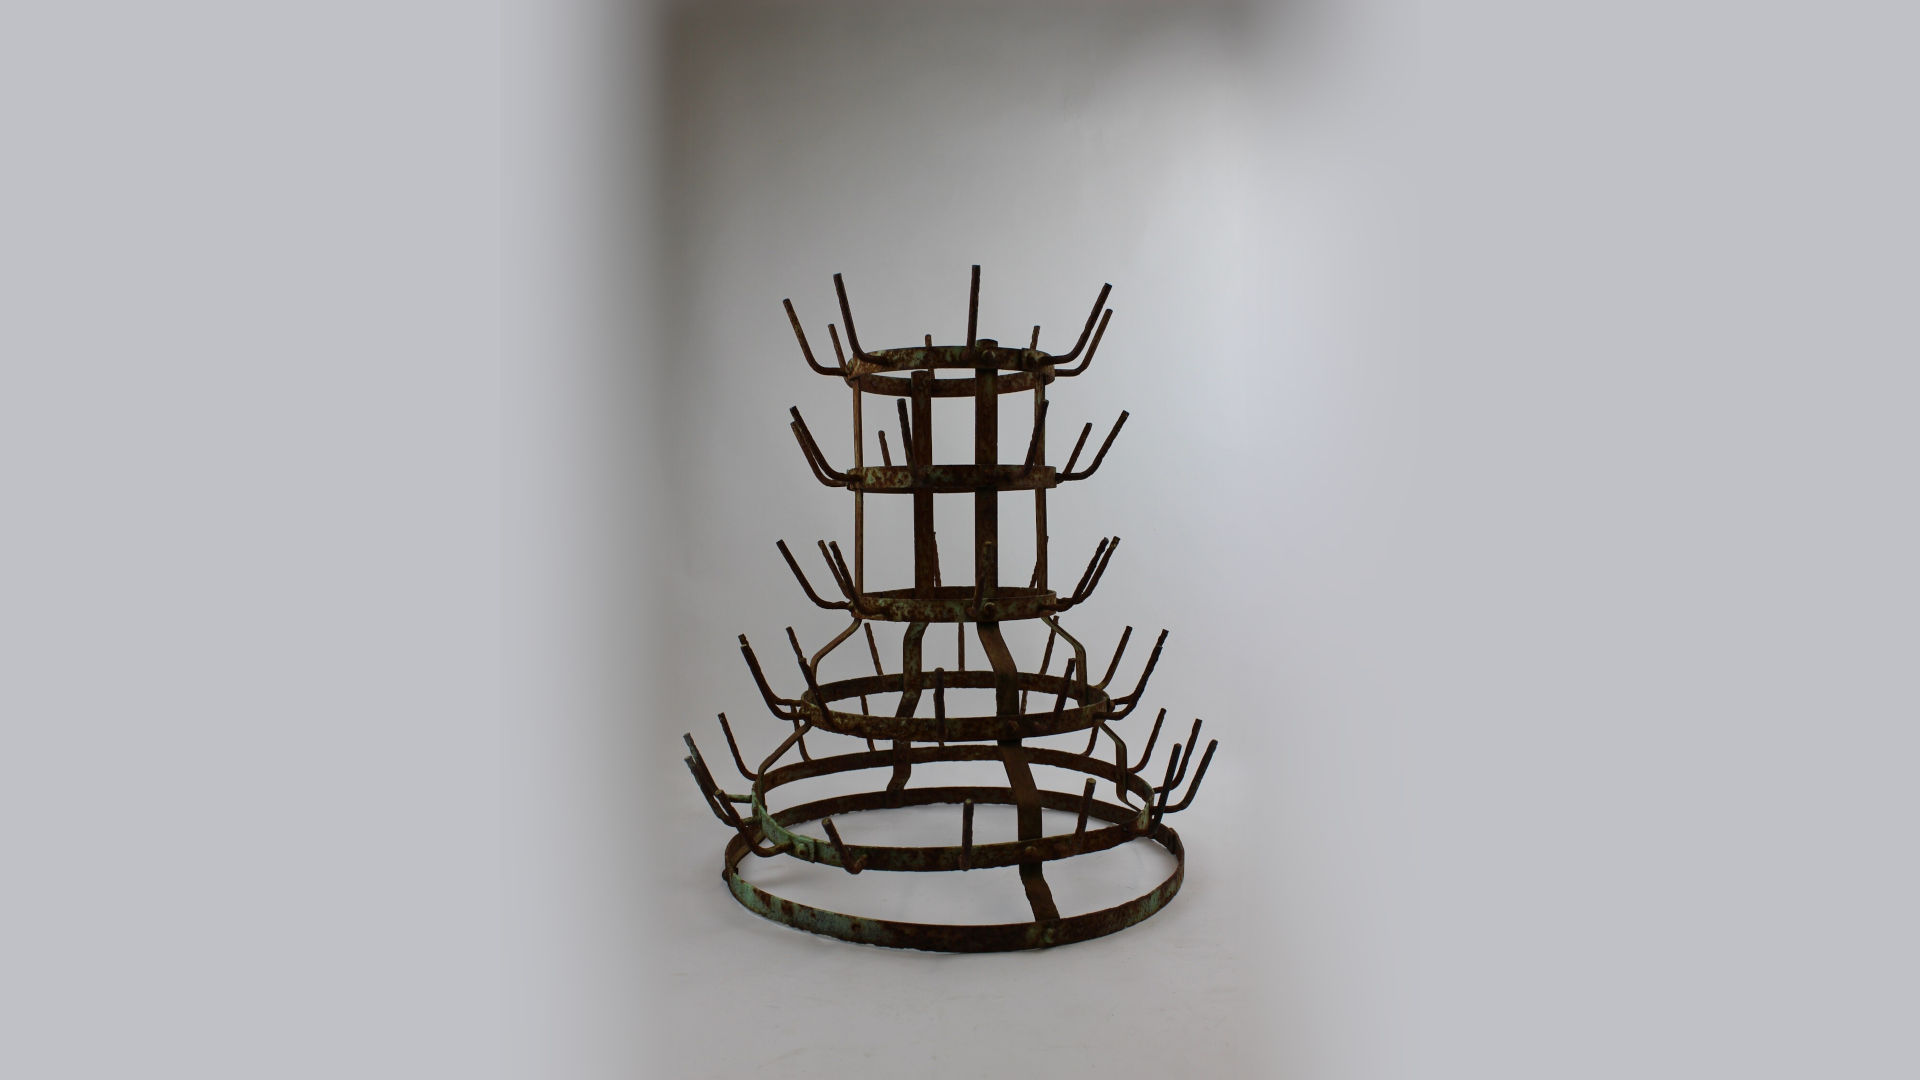 Foto: ein trapezförmiges, rundes Objekt aus Metall mit nach oben stehenden Haken